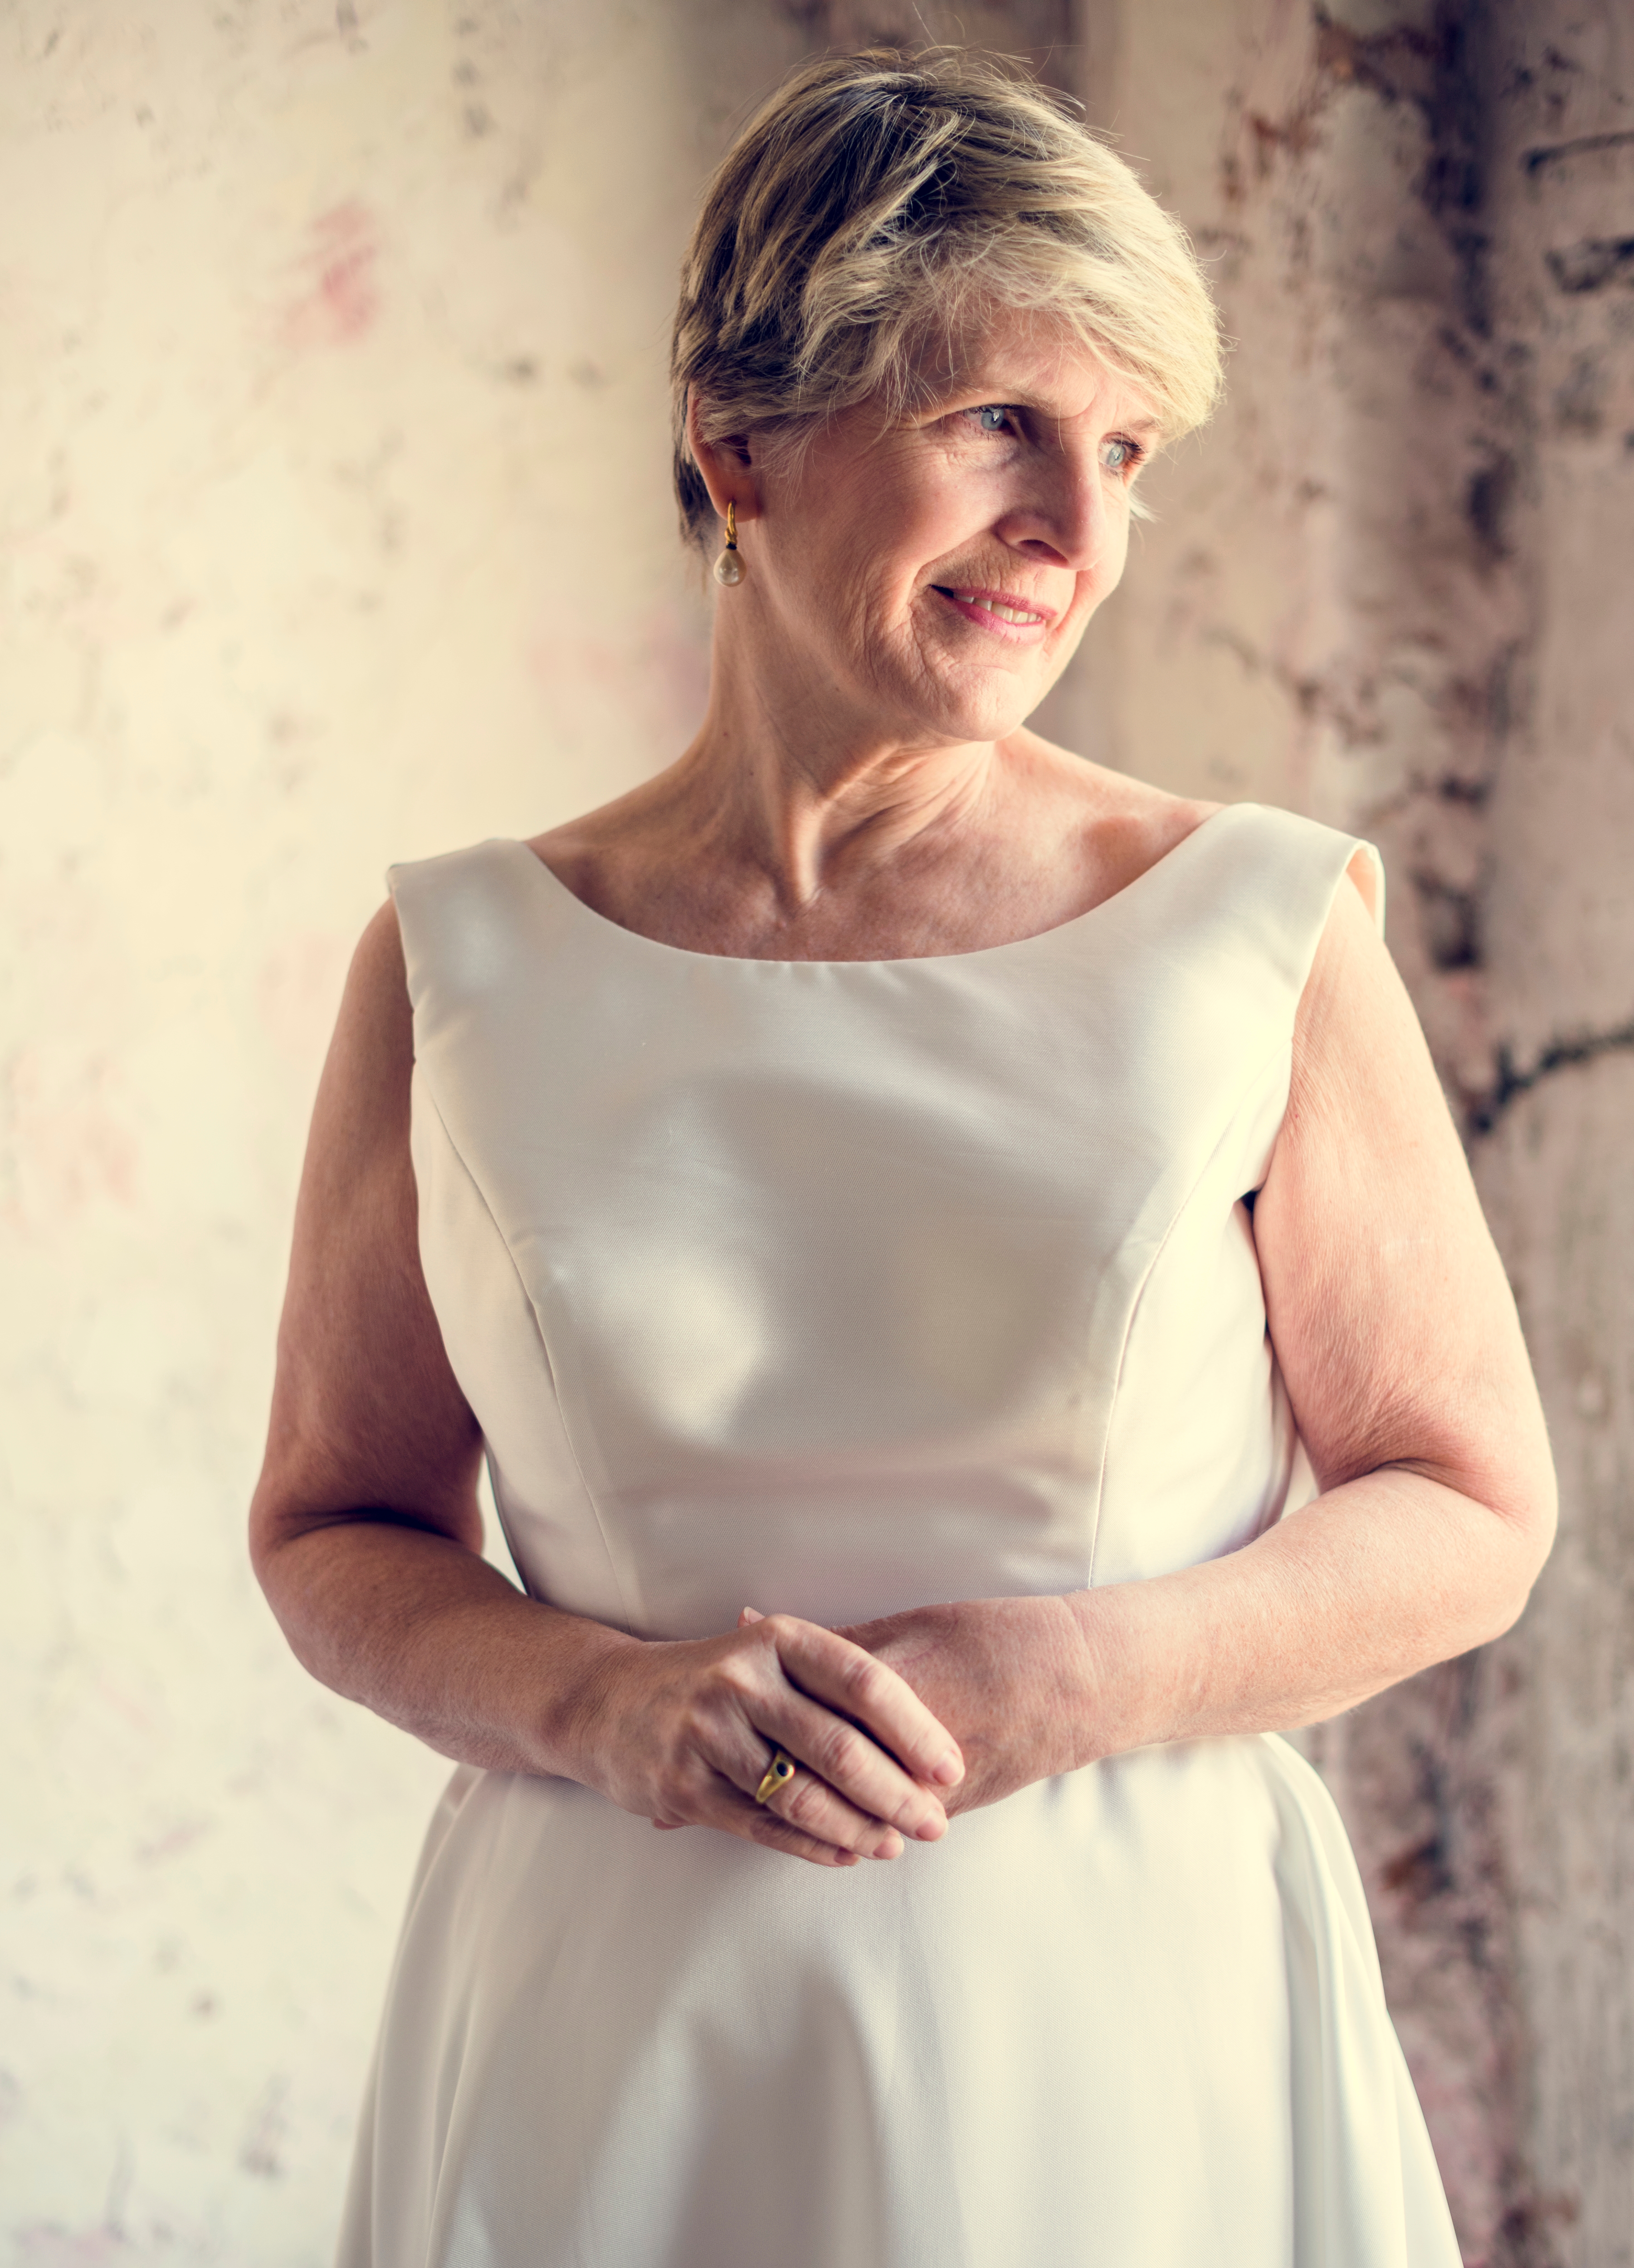 An elderly woman in a white dress | Source: Shutterstock